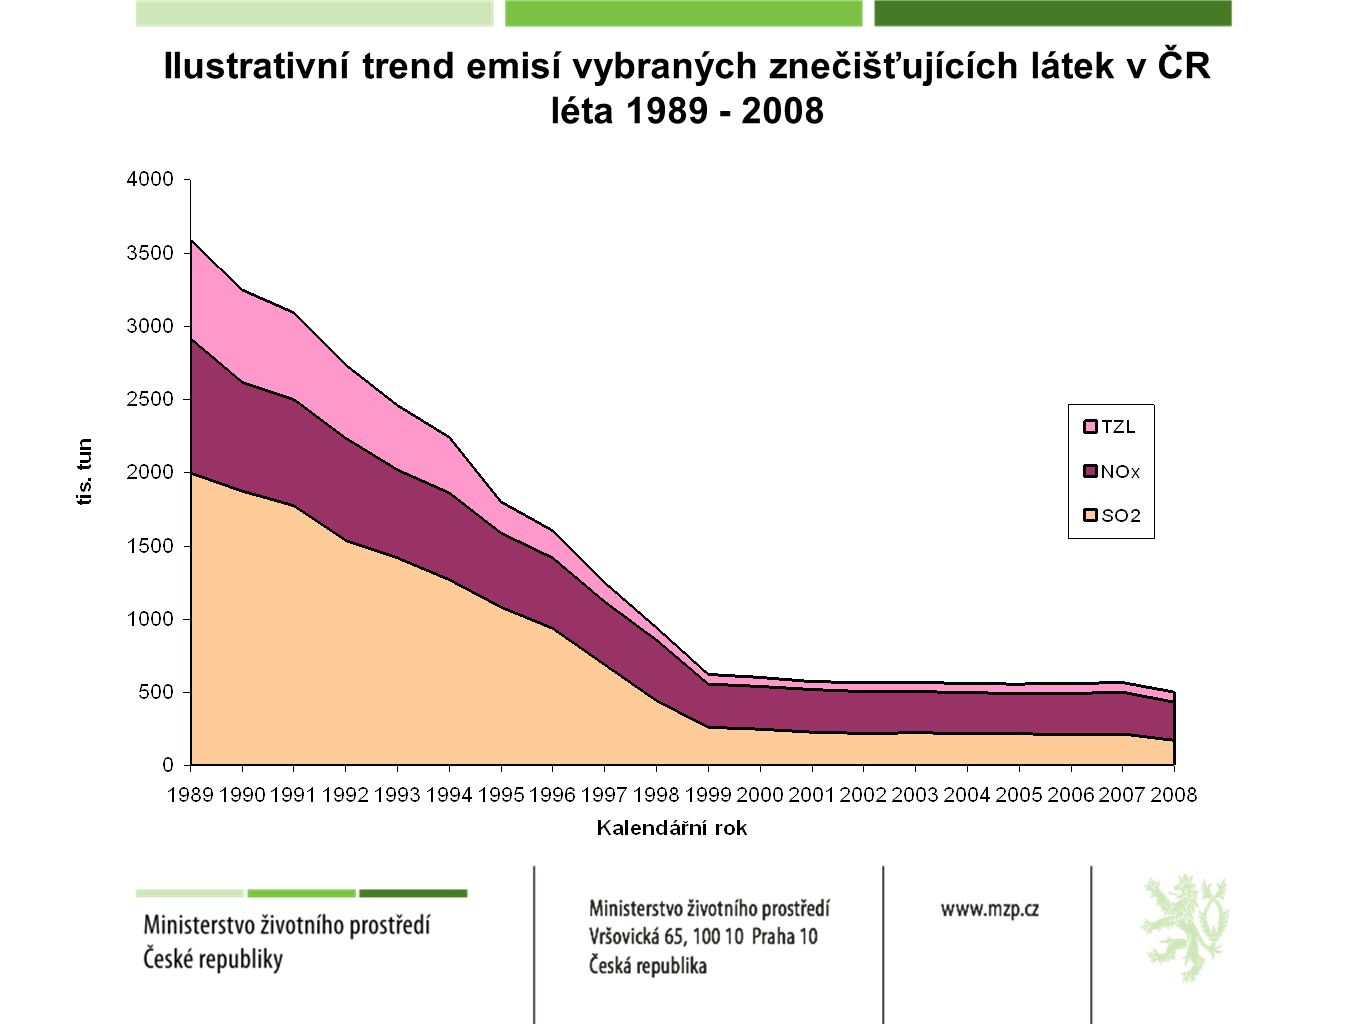 Ilustrativní trend emisí vybraných znečišťujících látek v ČR léta